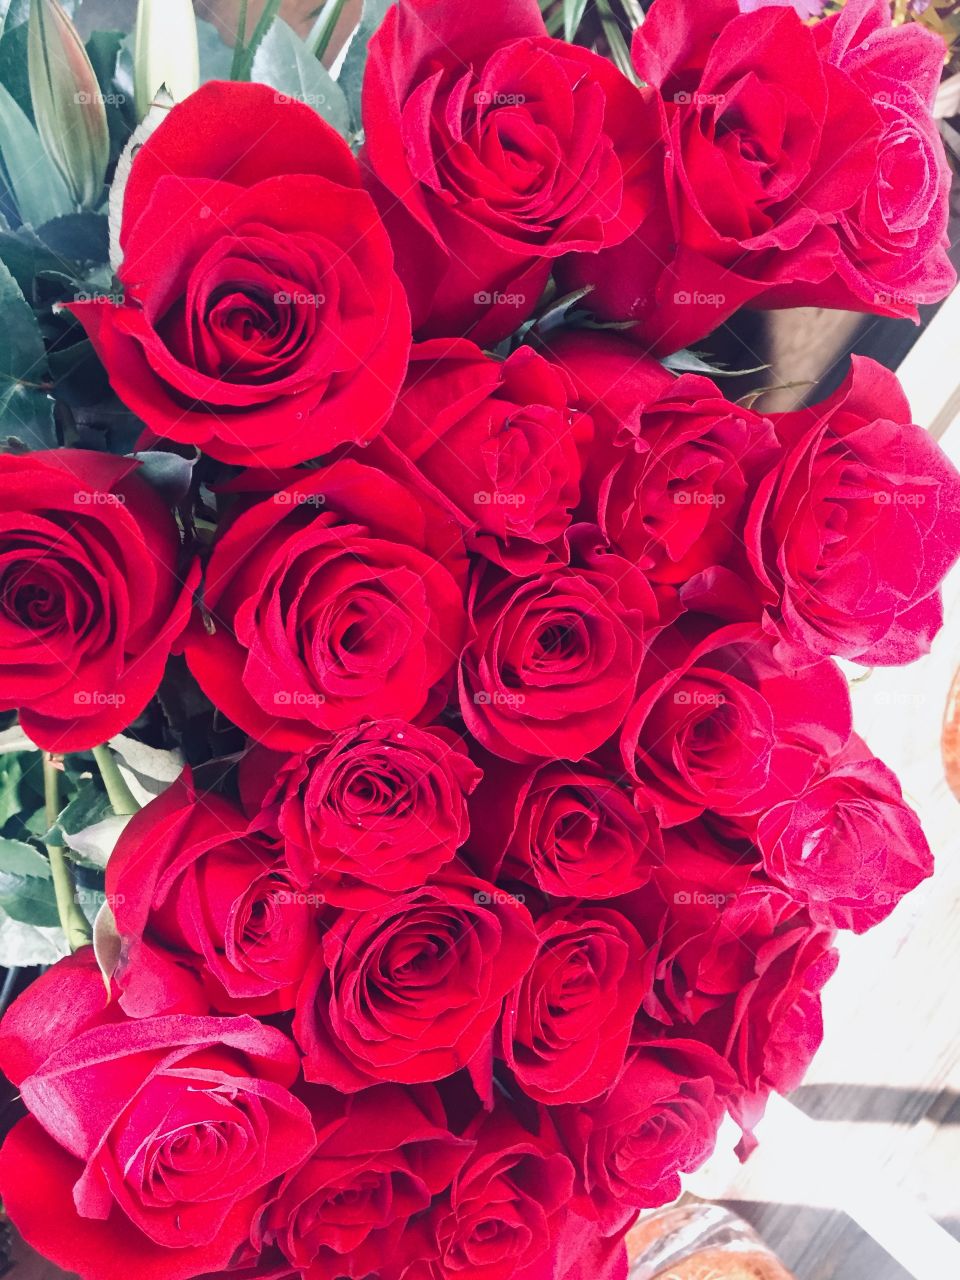 La belleza de las rosas rojas. Nunca me canso de ella son preciosas 